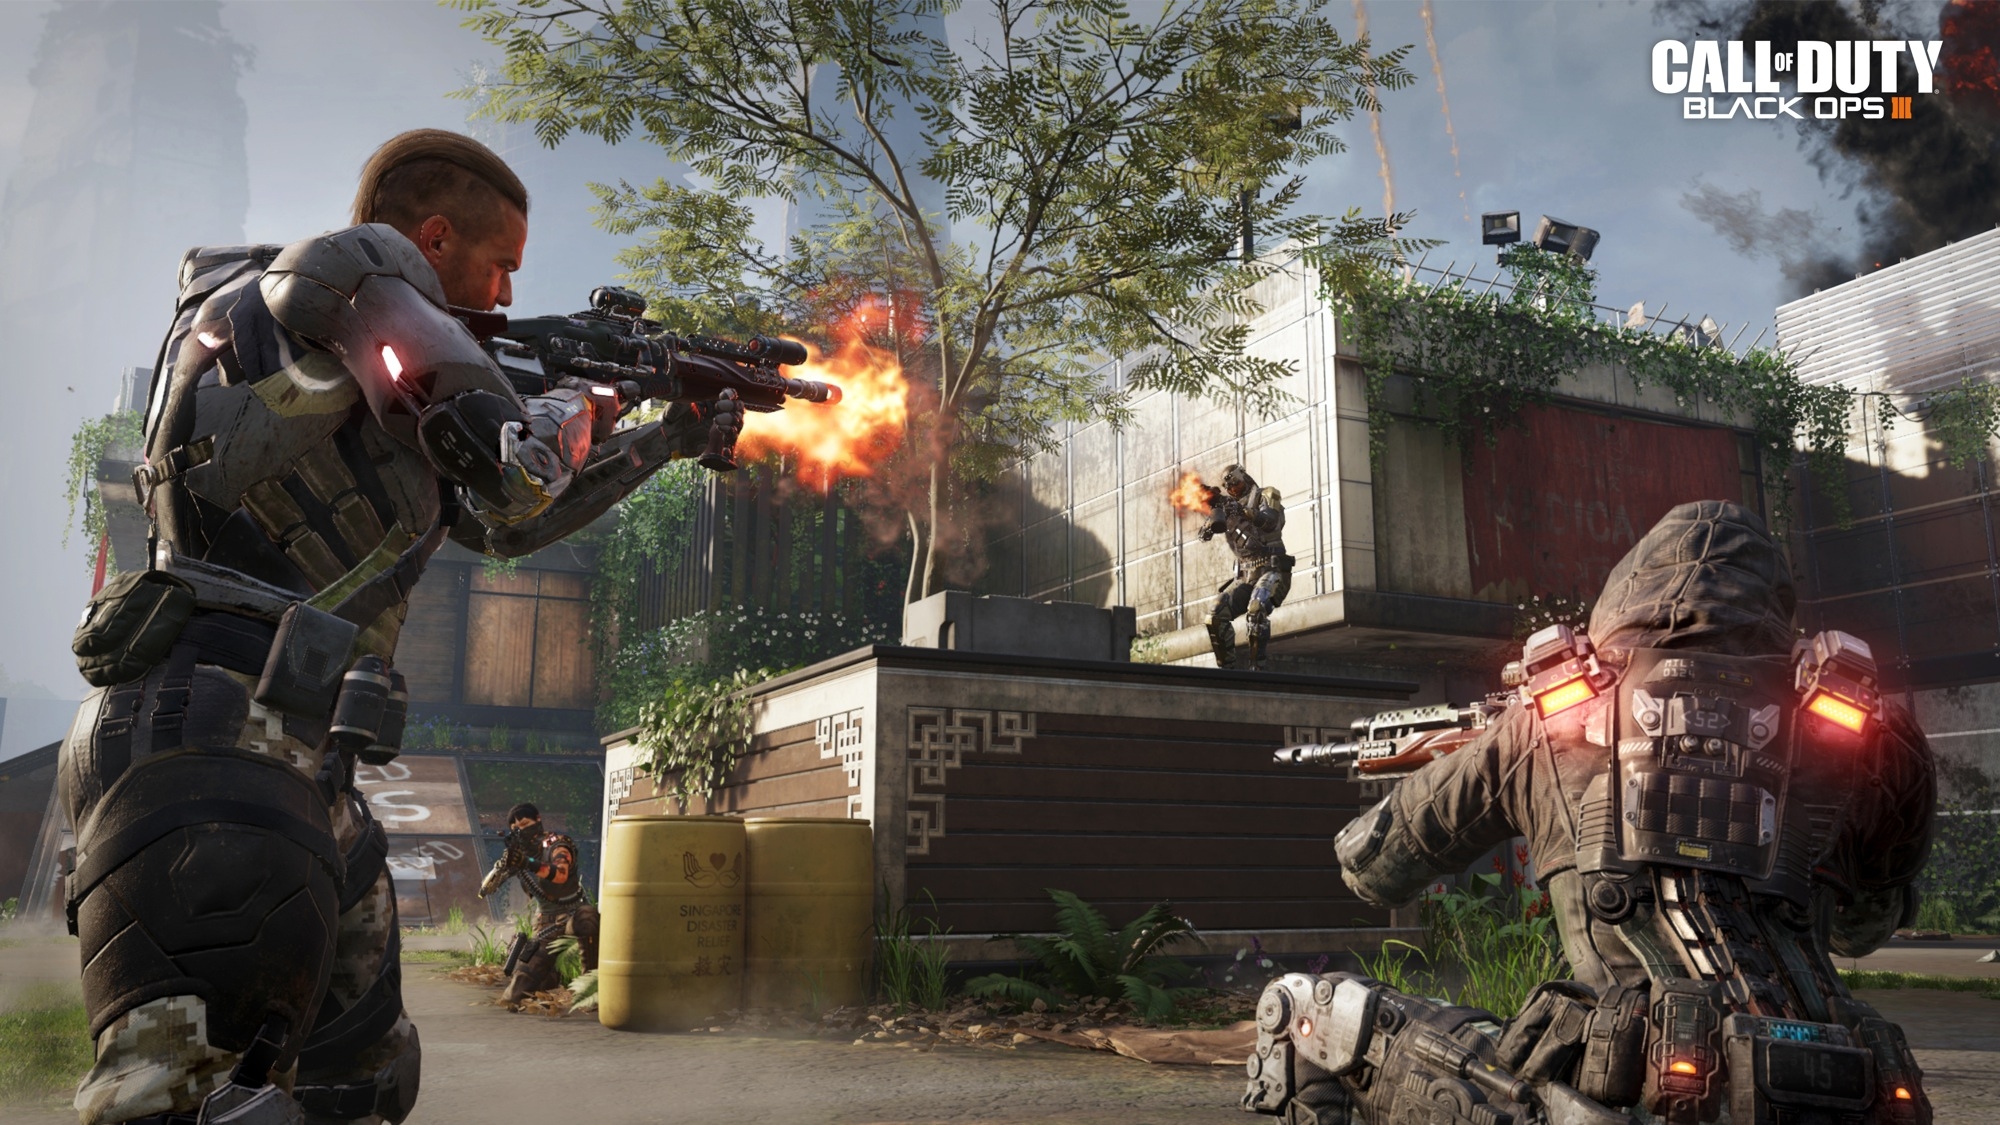 Скриншот из игры Call of Duty: Black Ops 3 под номером 1